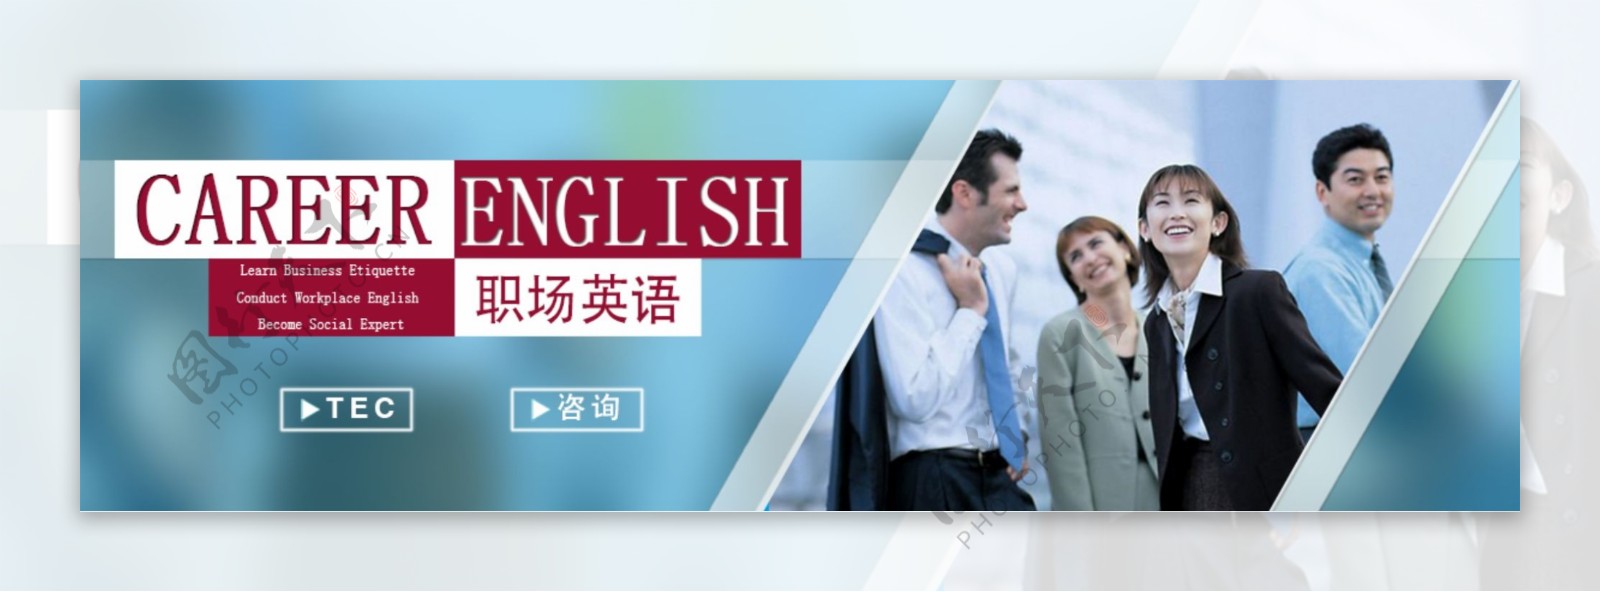 英语培训网站课程图片